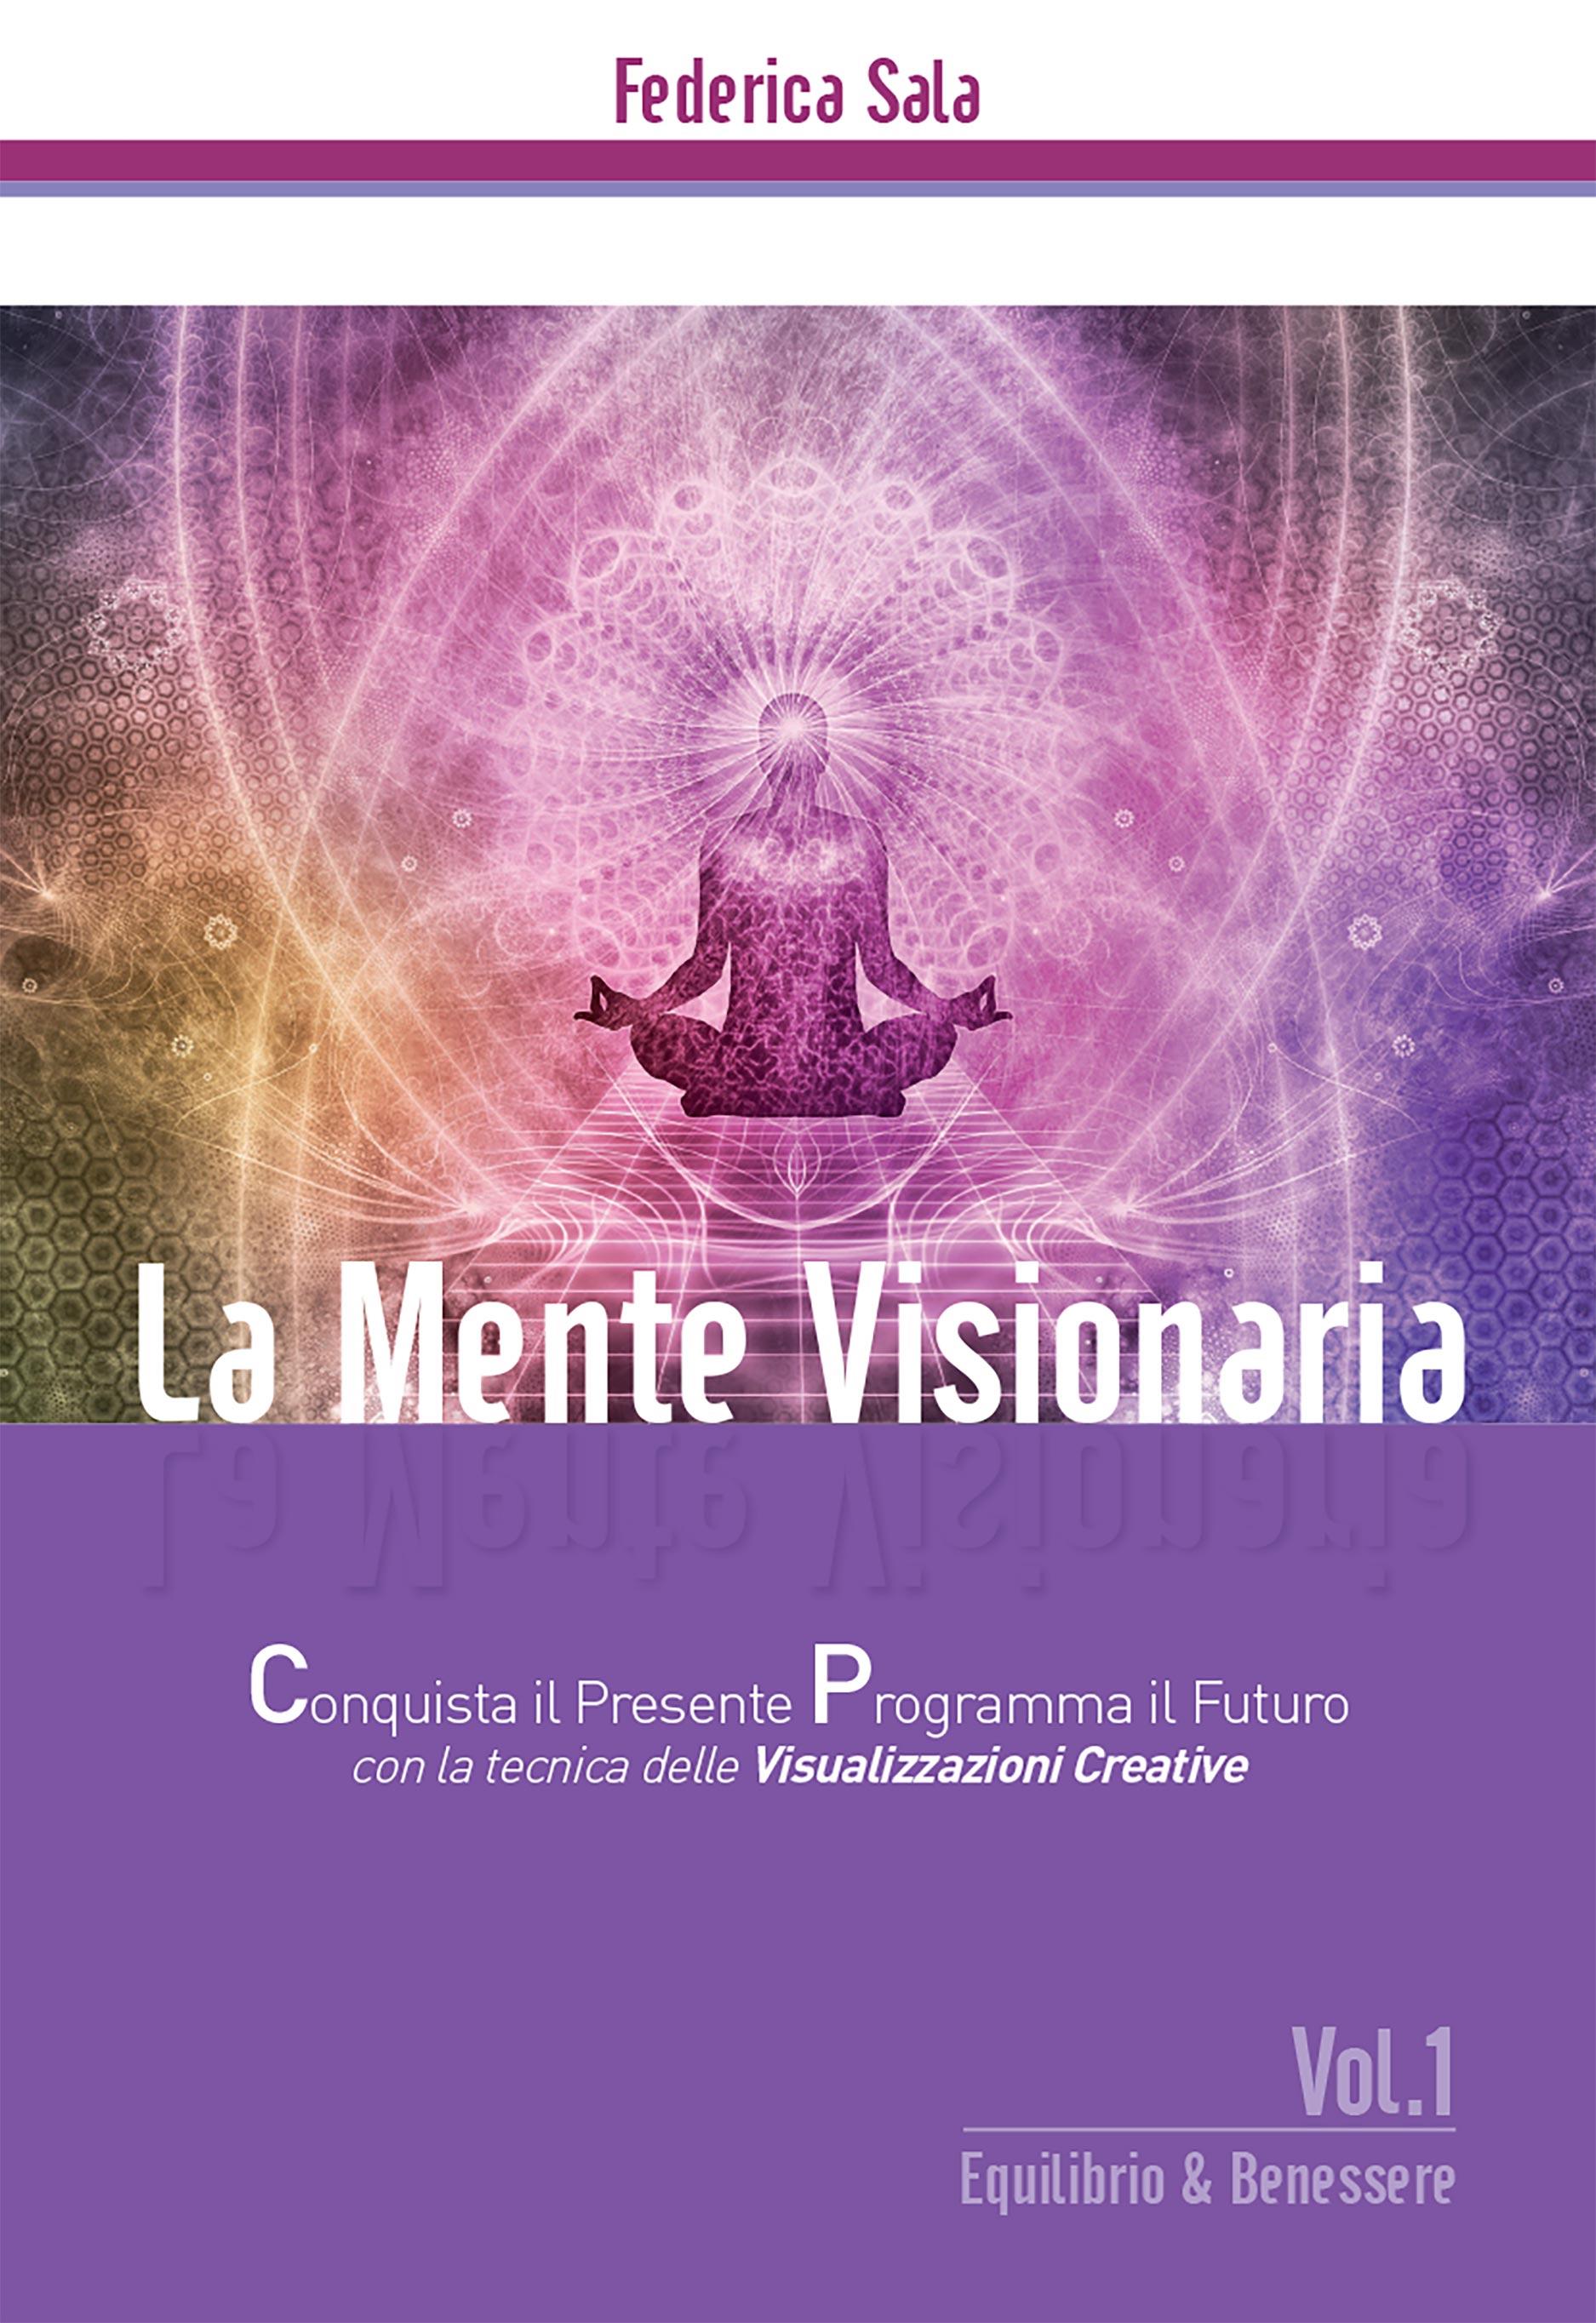 La Mente Visionaria Vol.1 Equilibrio & Benessere